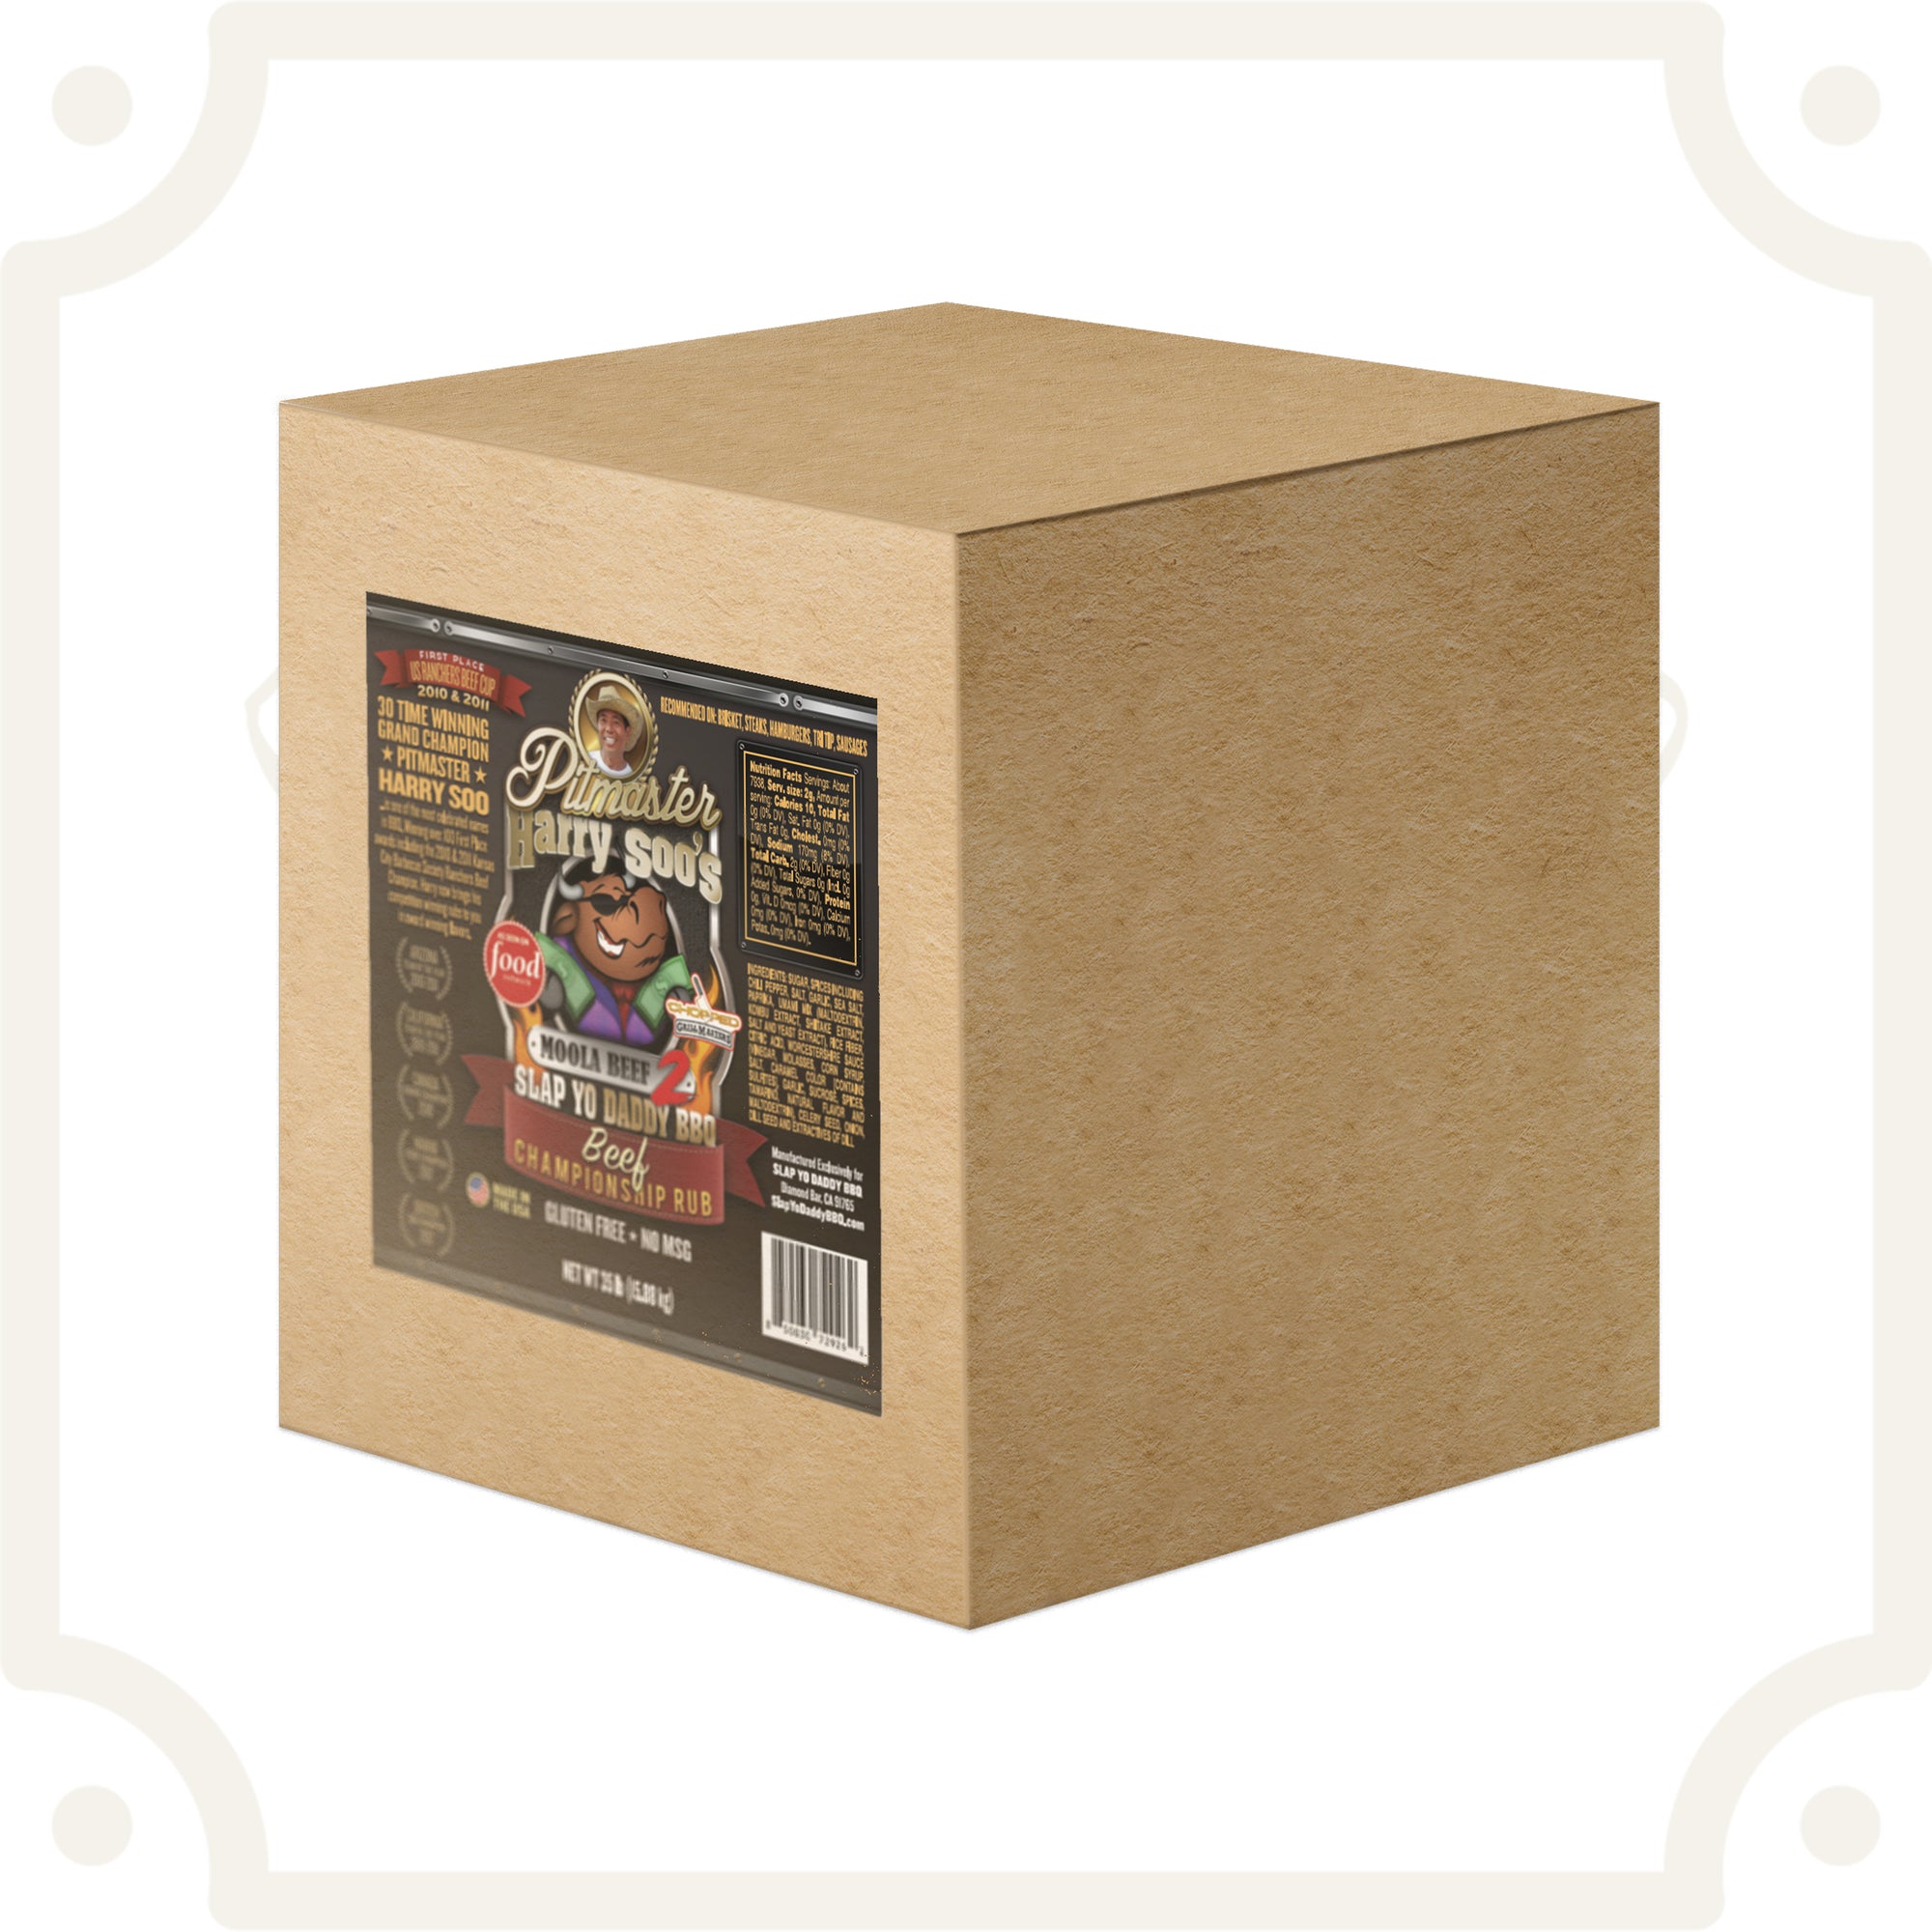 Moola Beef v2.0 Rub - 50 lbs (Box)